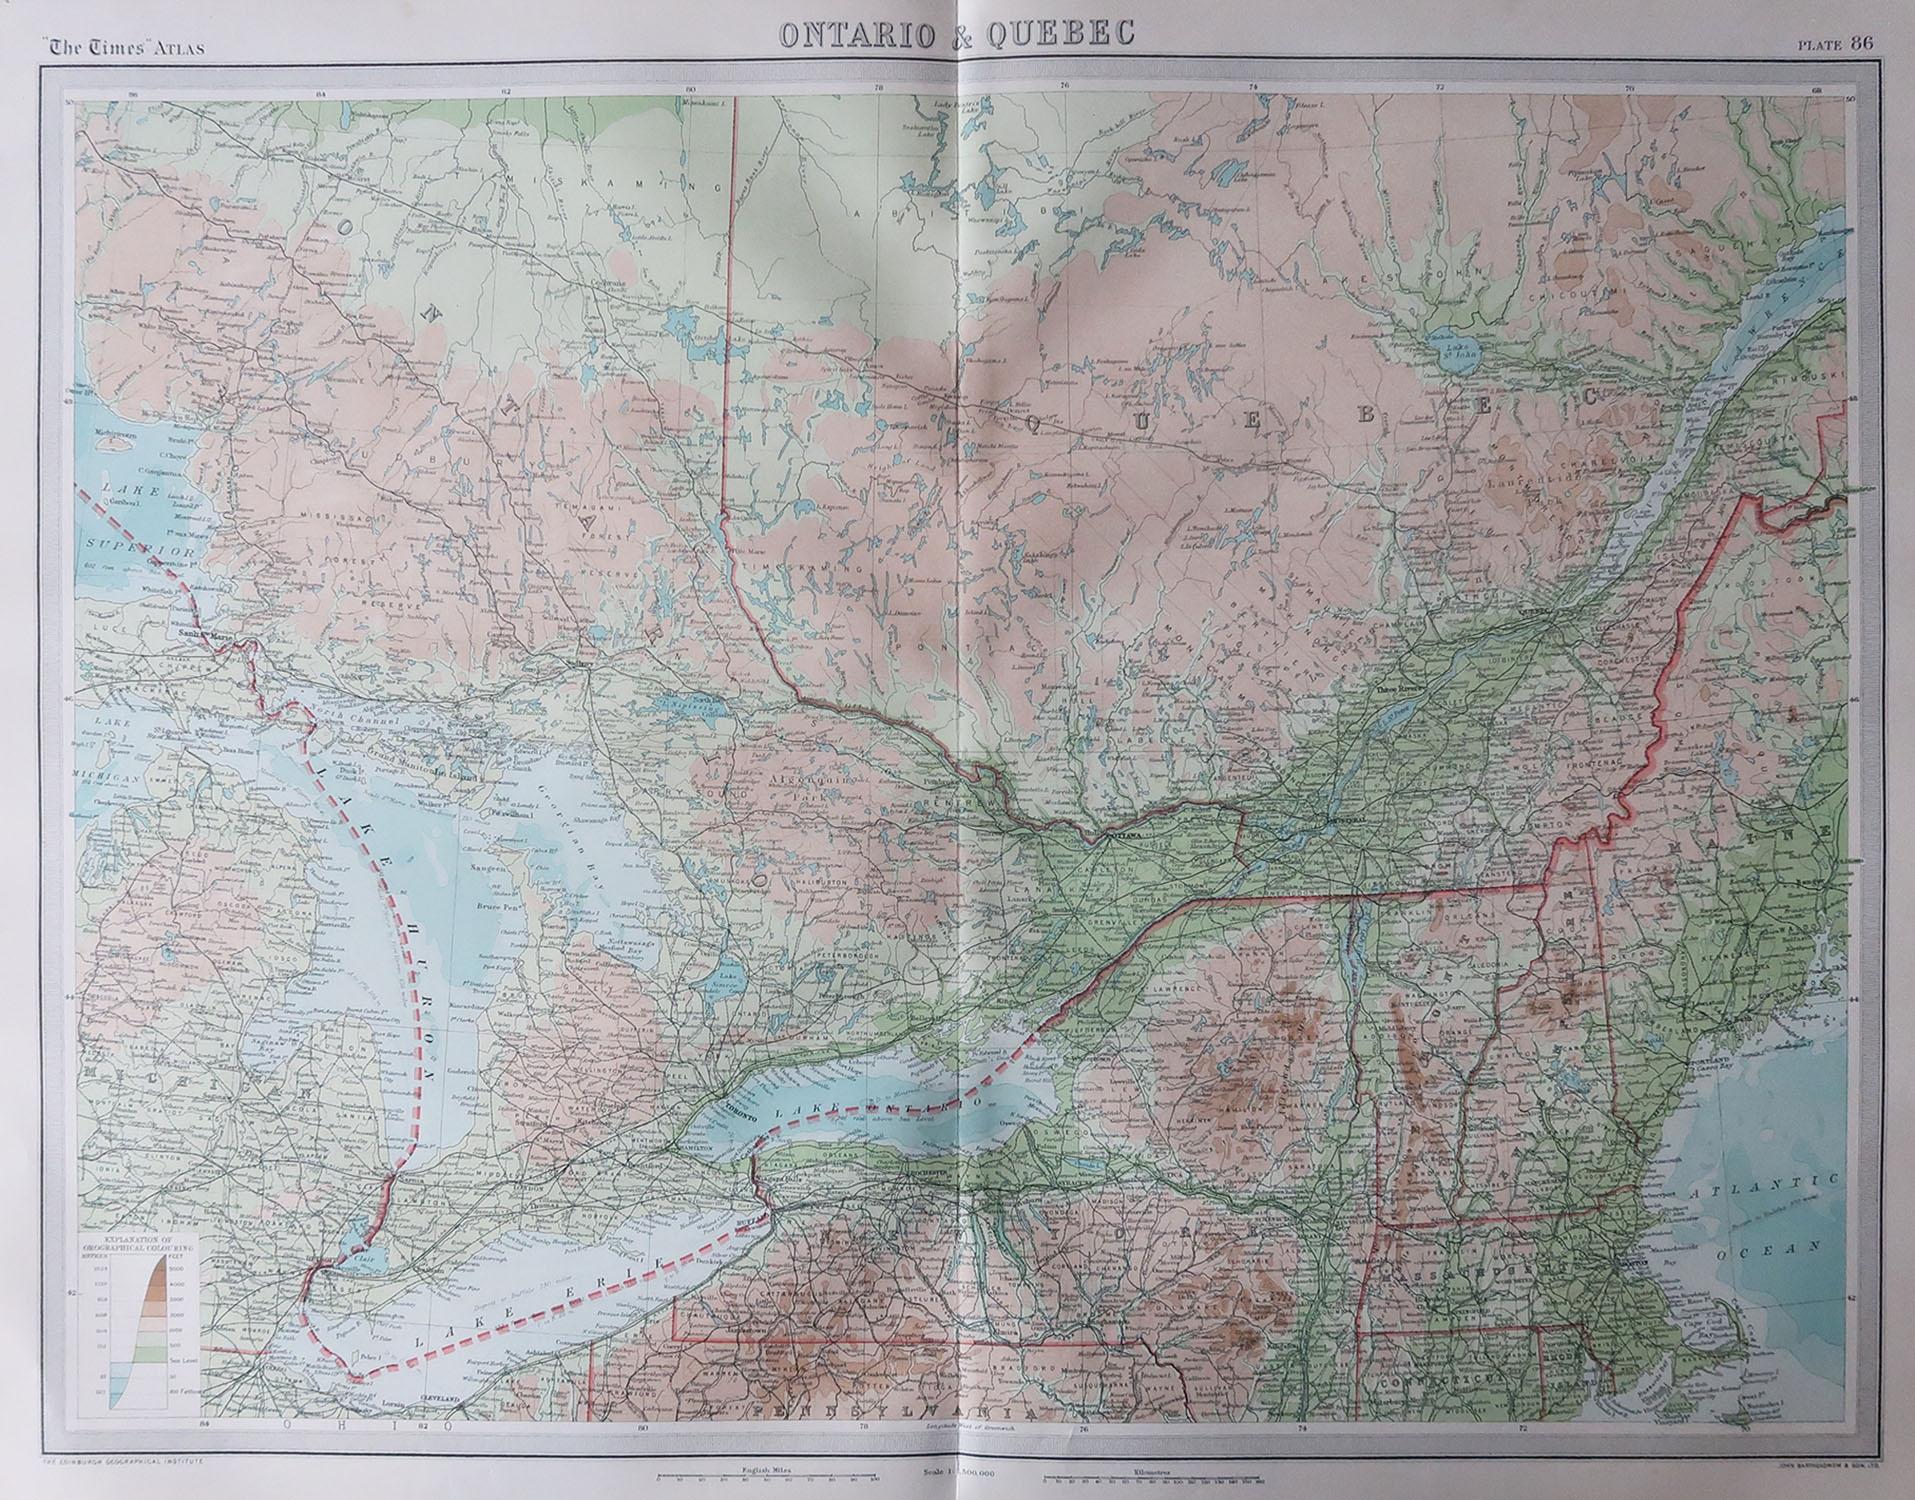 Großartige Karte der Großen Seen.

Ungerahmt.

Originalfarbe.

Von John Bartholomew und Co. Geographisches Institut Edinburgh

Veröffentlicht, ca. 1920

Kostenloser Versand.
 